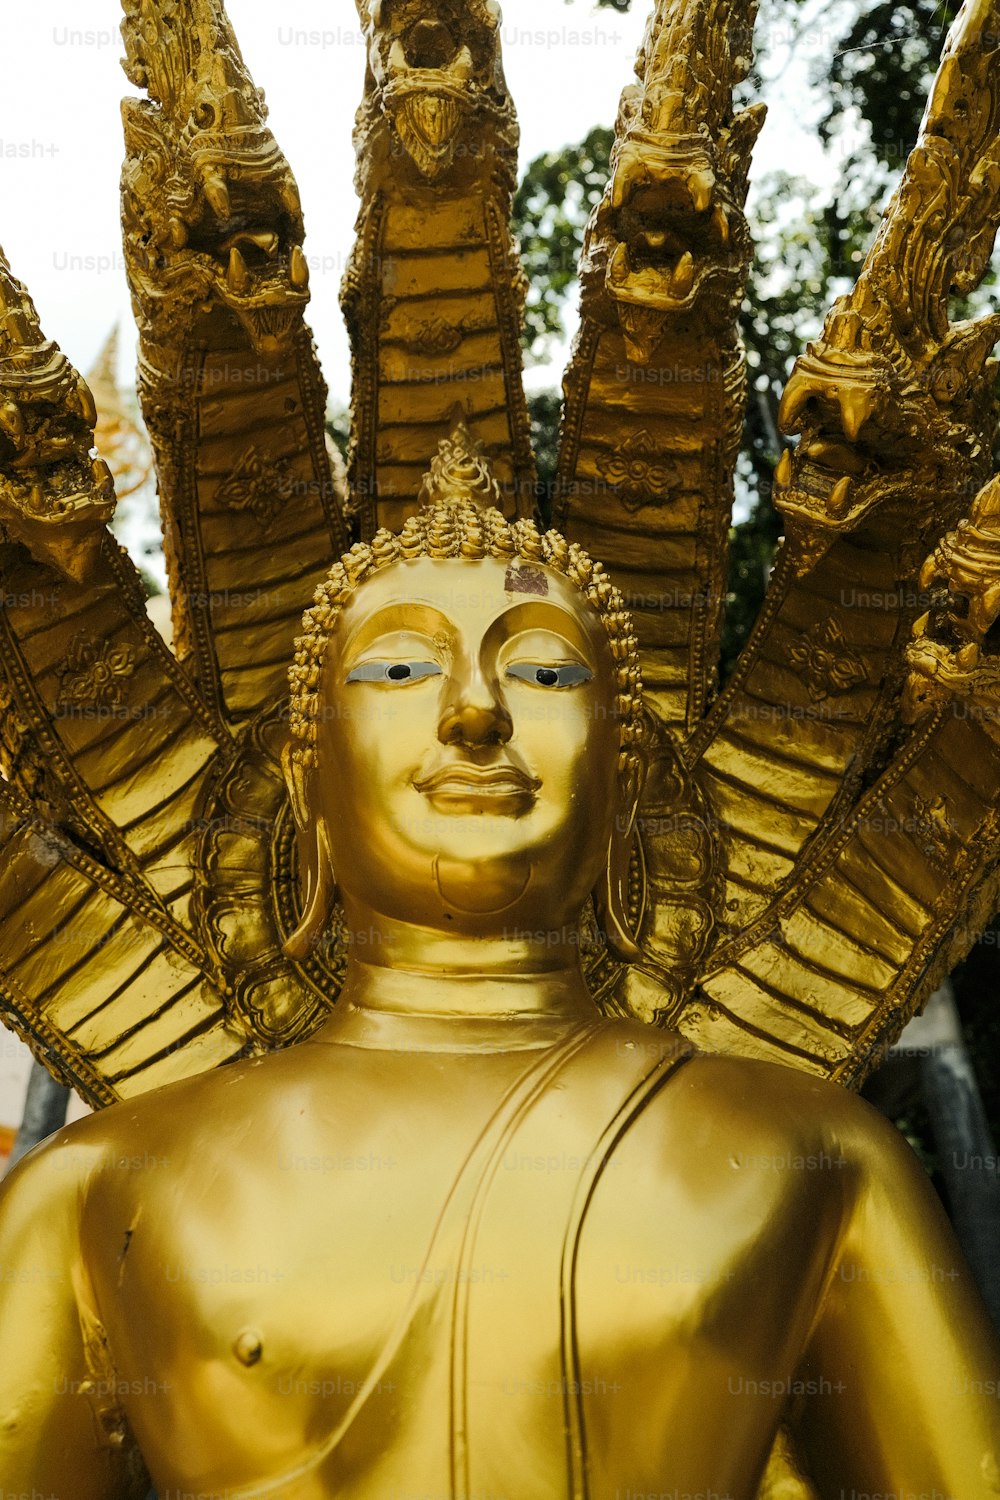 une statue dorée d’une personne aux bras tendus